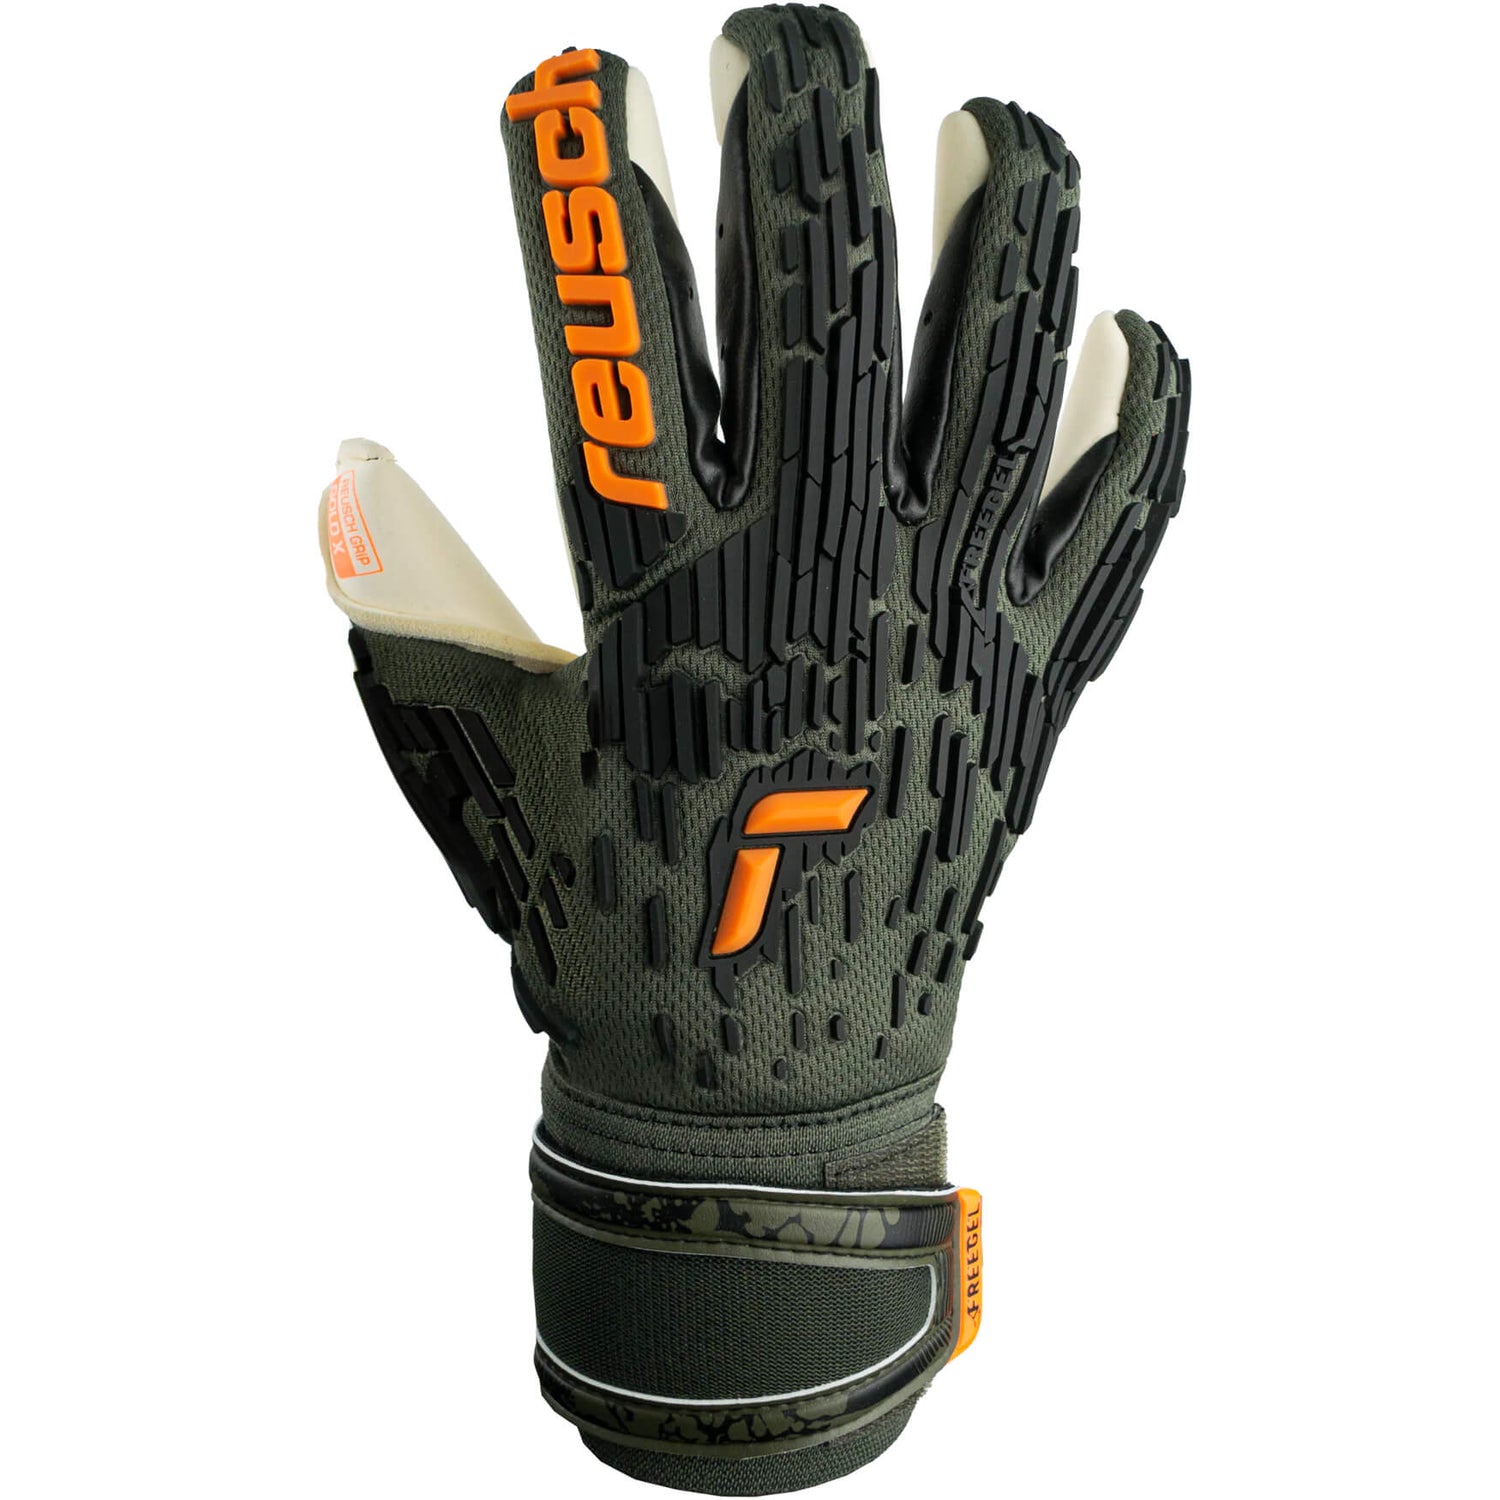 Reusch Attrakt Freegel Gold X Finger Support Goalkeeper Gloves (Single - Outer)